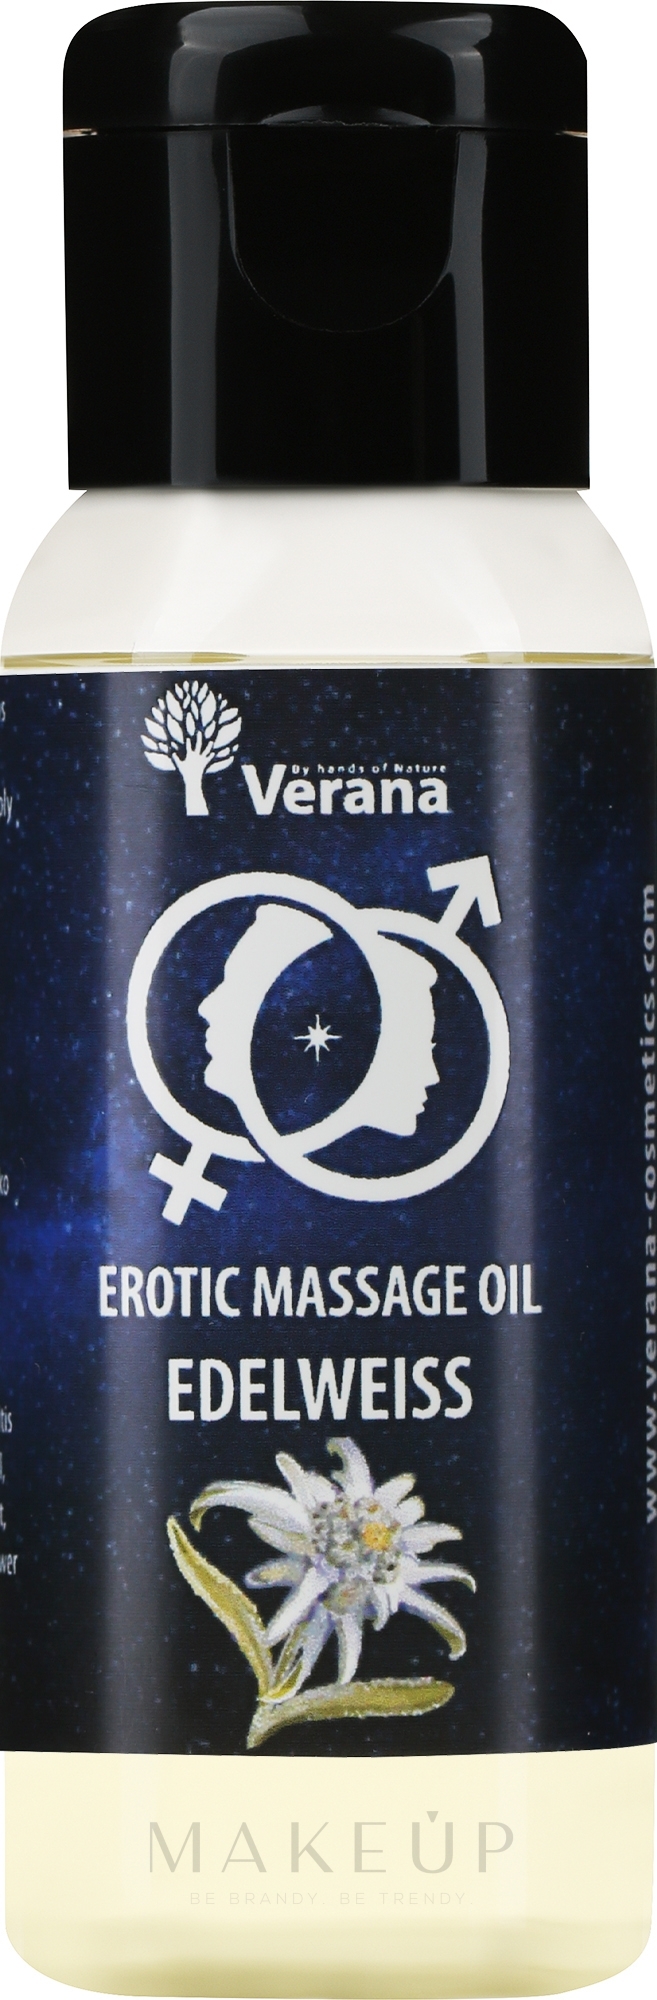 Öl für erotische Massage Edelweiß - Verana Erotic Massage Oil Edelweiss  — Bild 30 ml